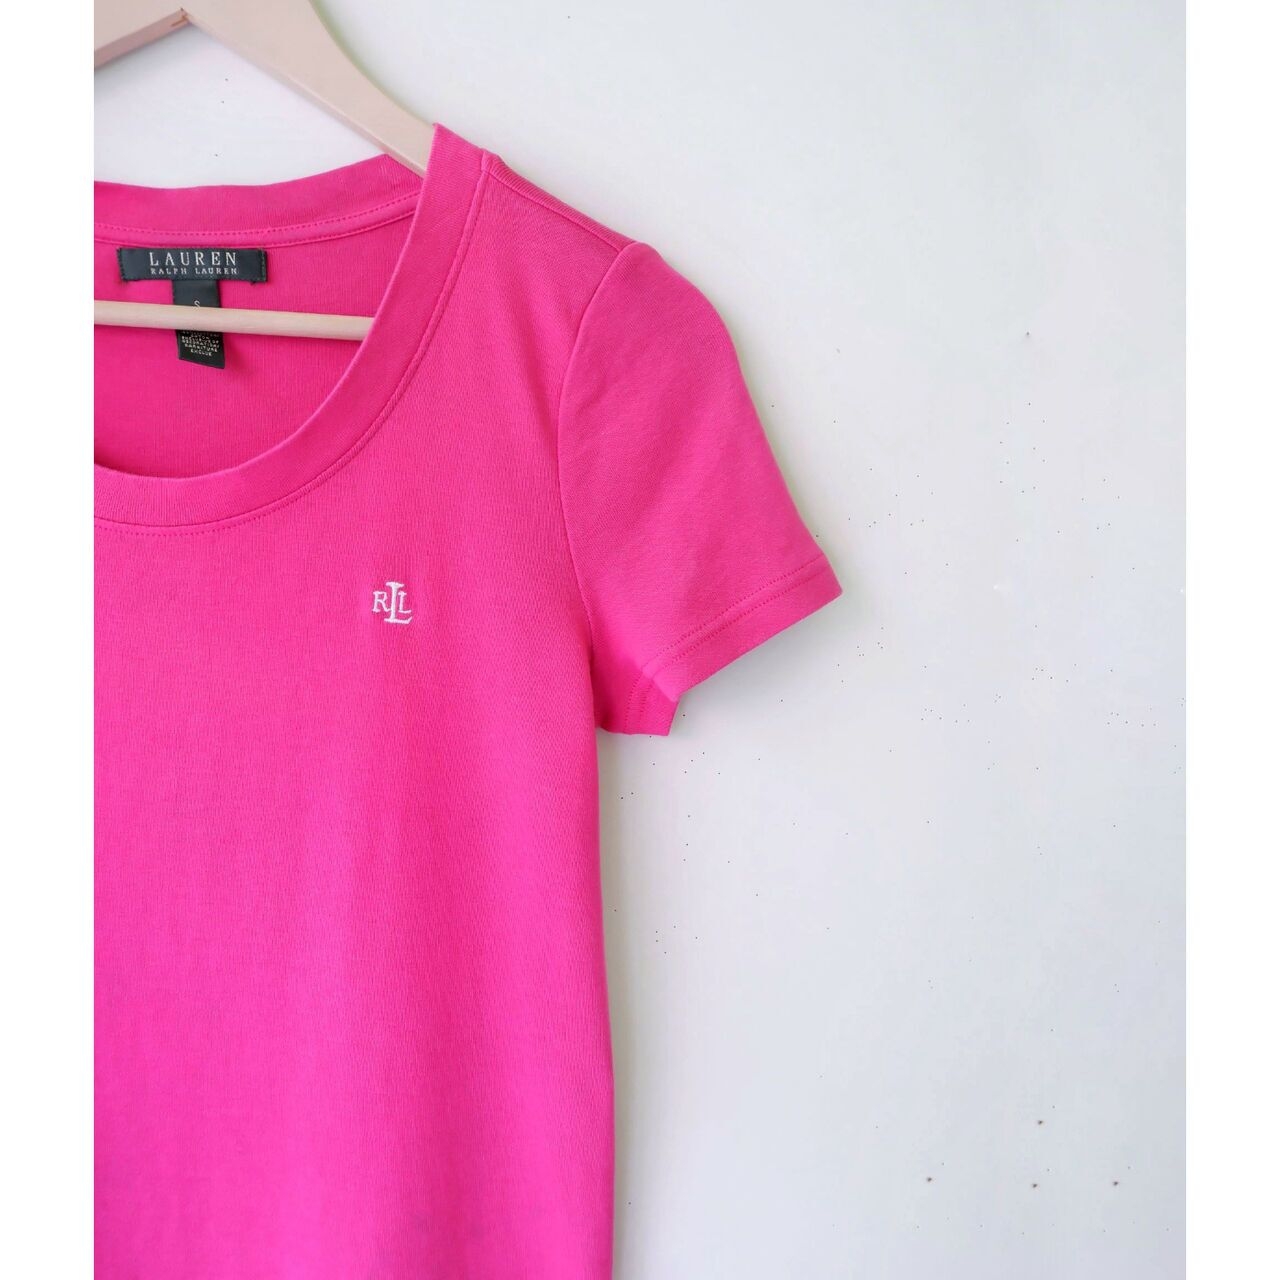 Ralph Lauren Pink Tshirt